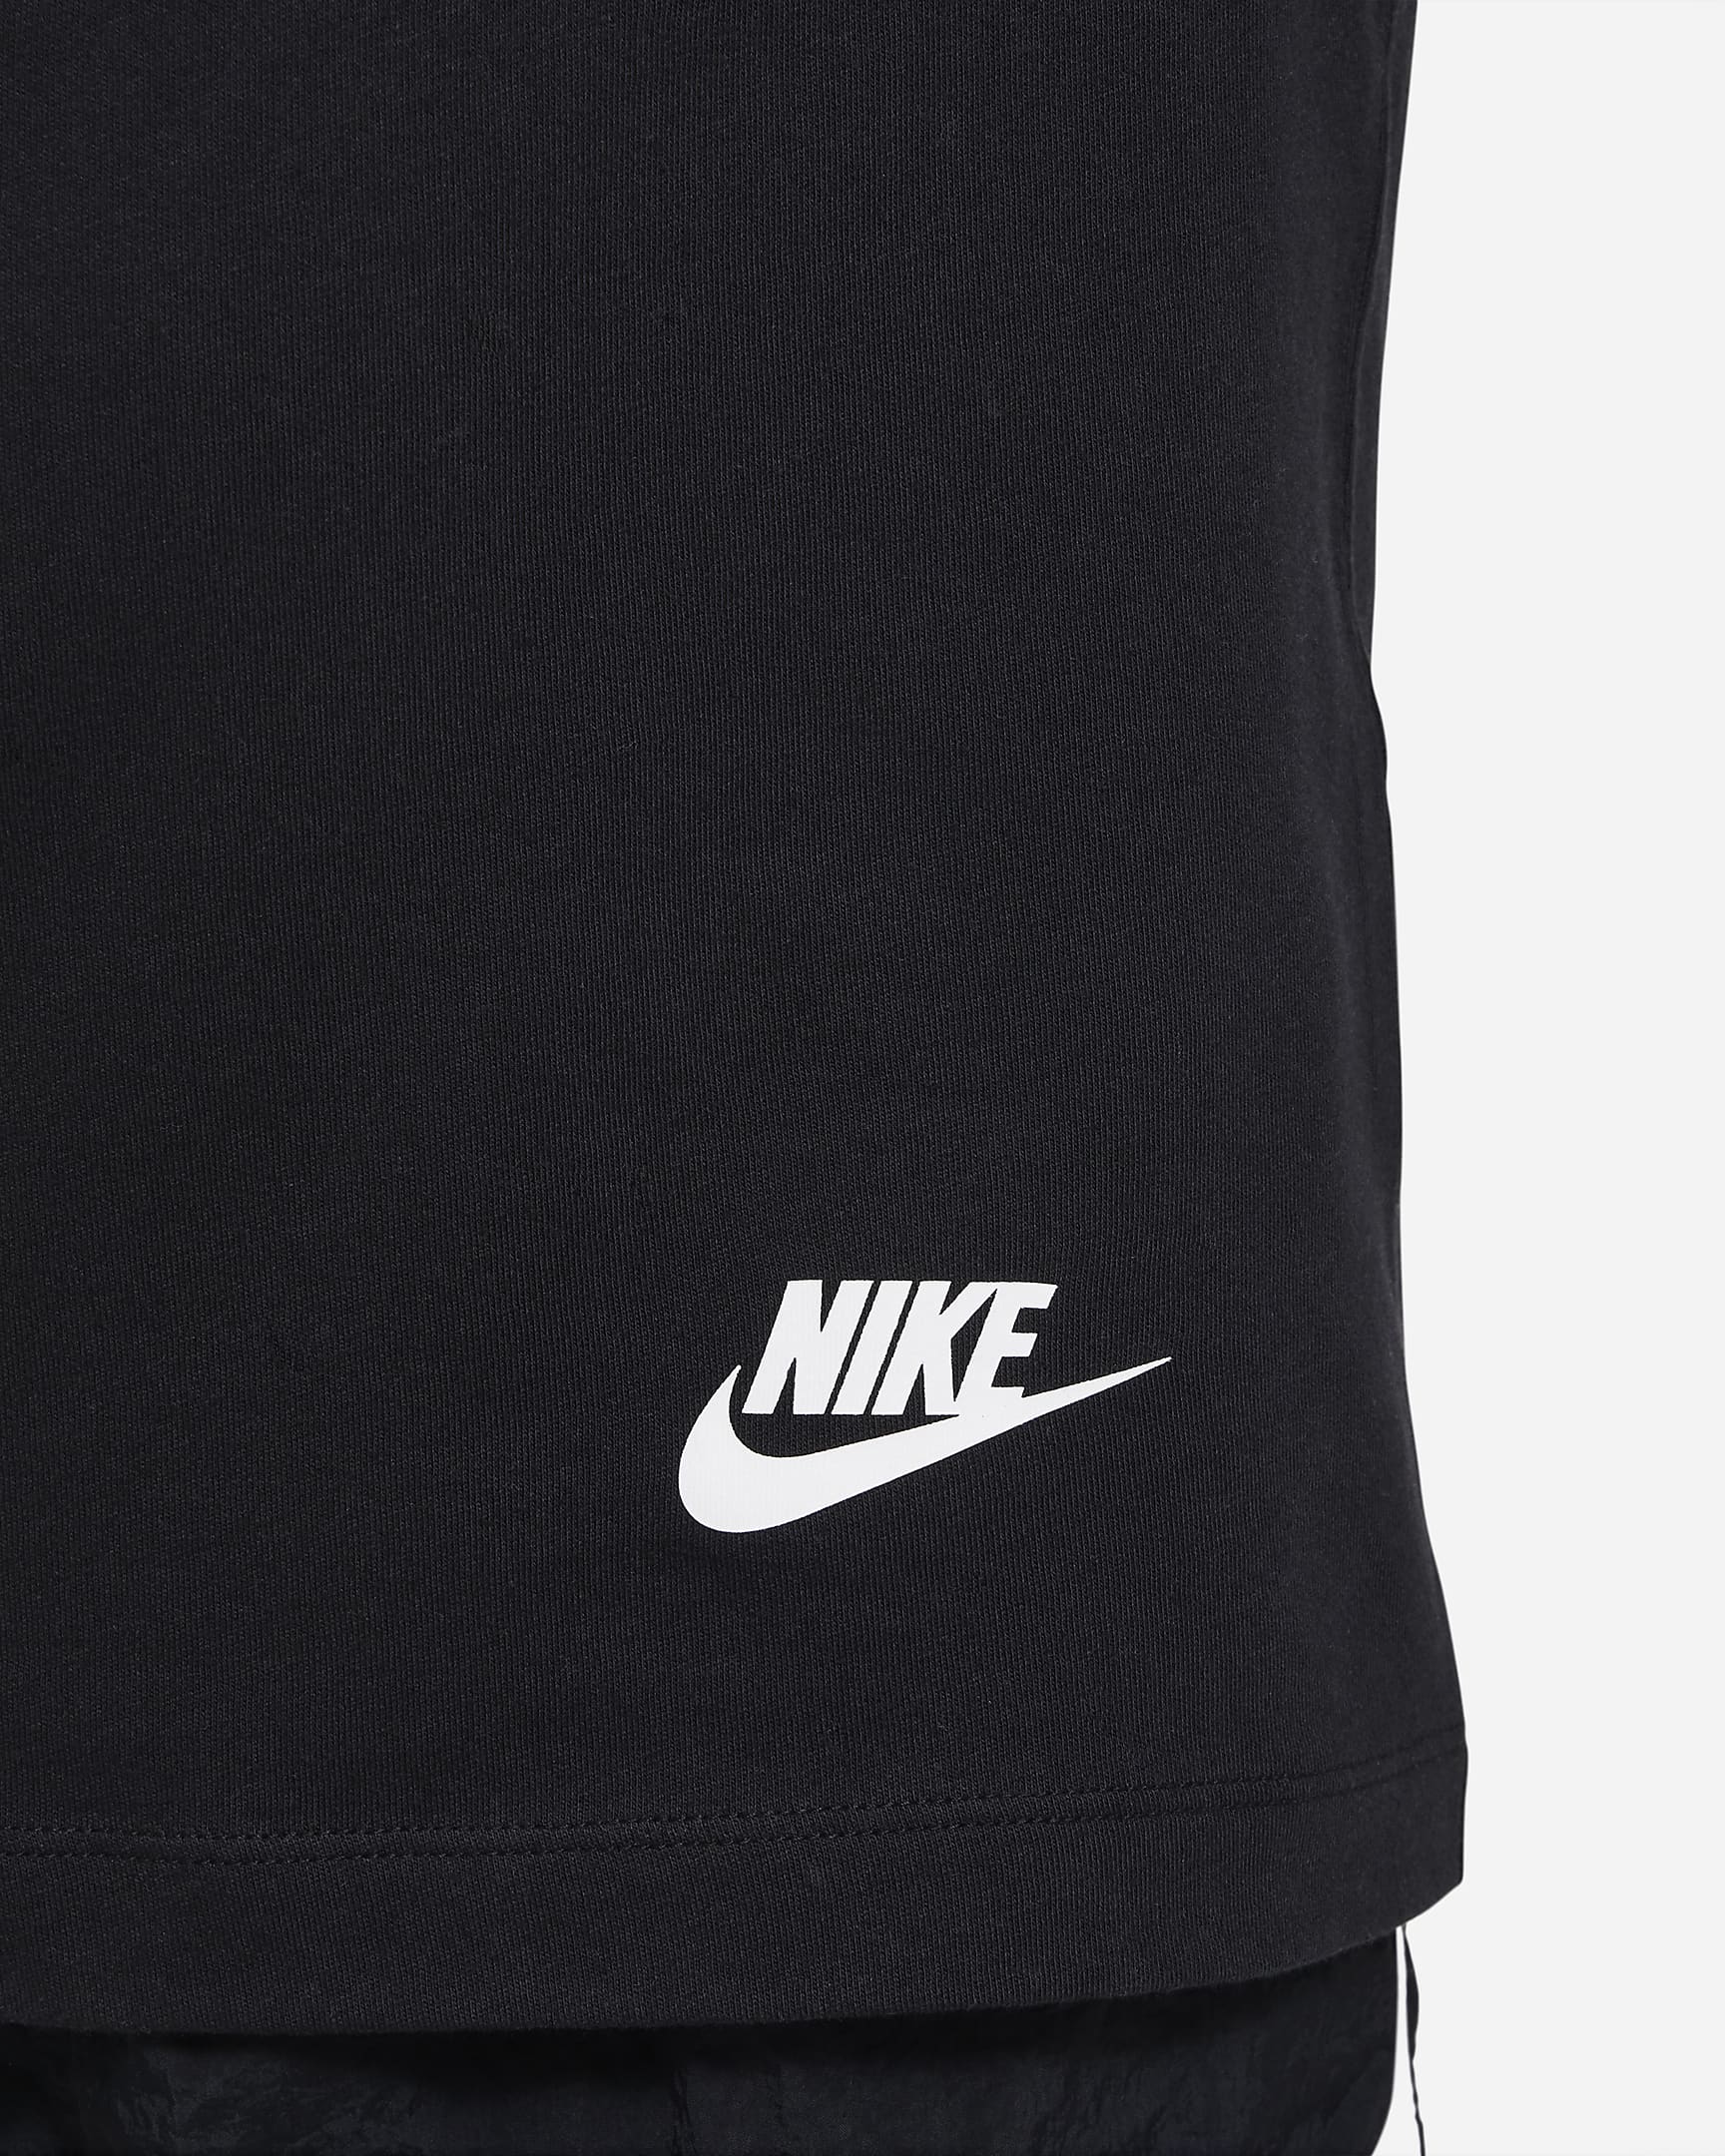 Nike Sportswear Older Kids' (Boys') T-Shirt. Nike IN